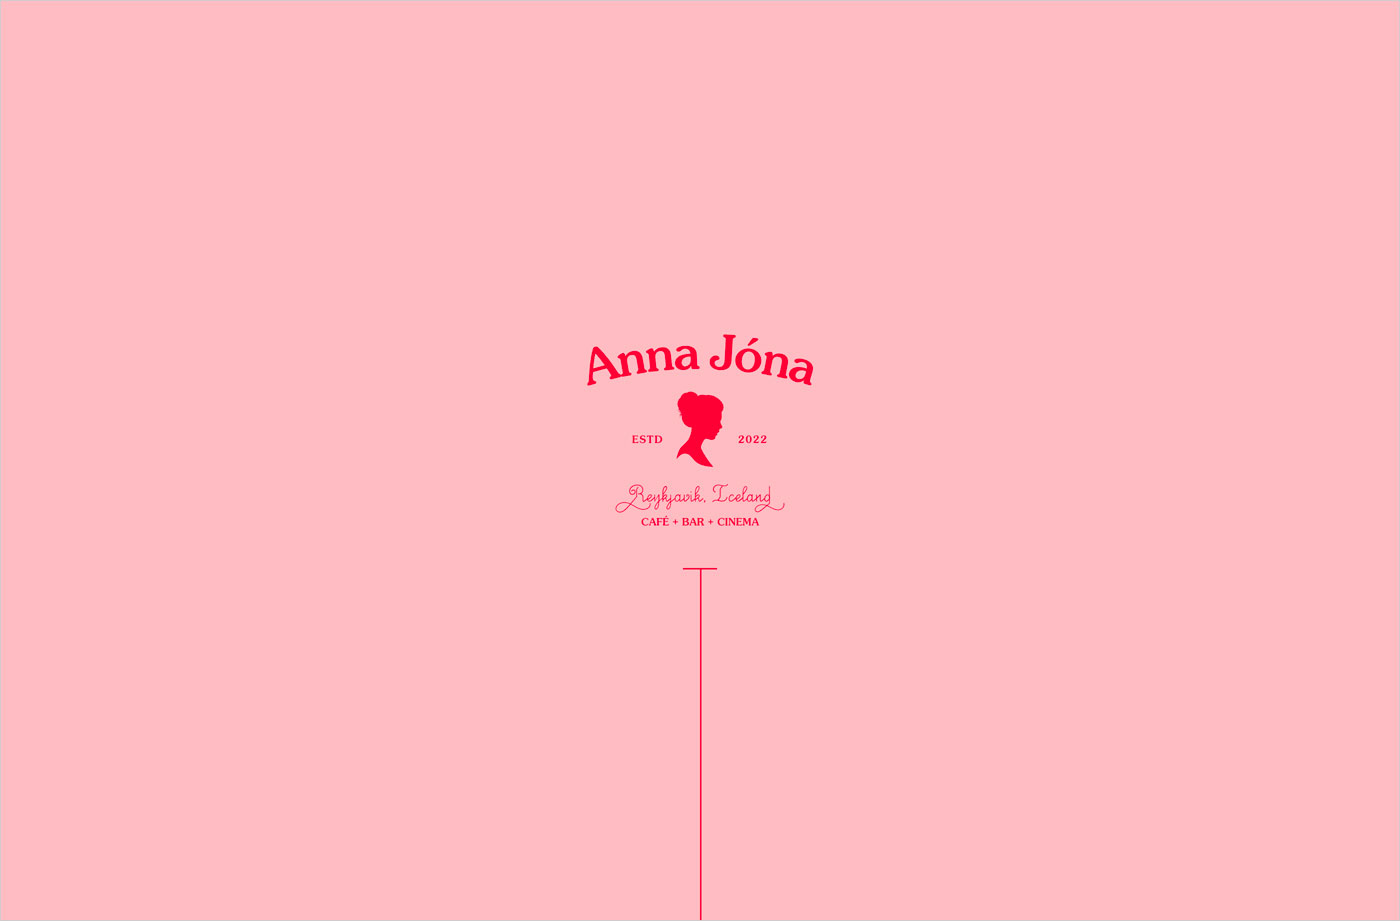 Anna Jónaウェブサイトの画面キャプチャ画像